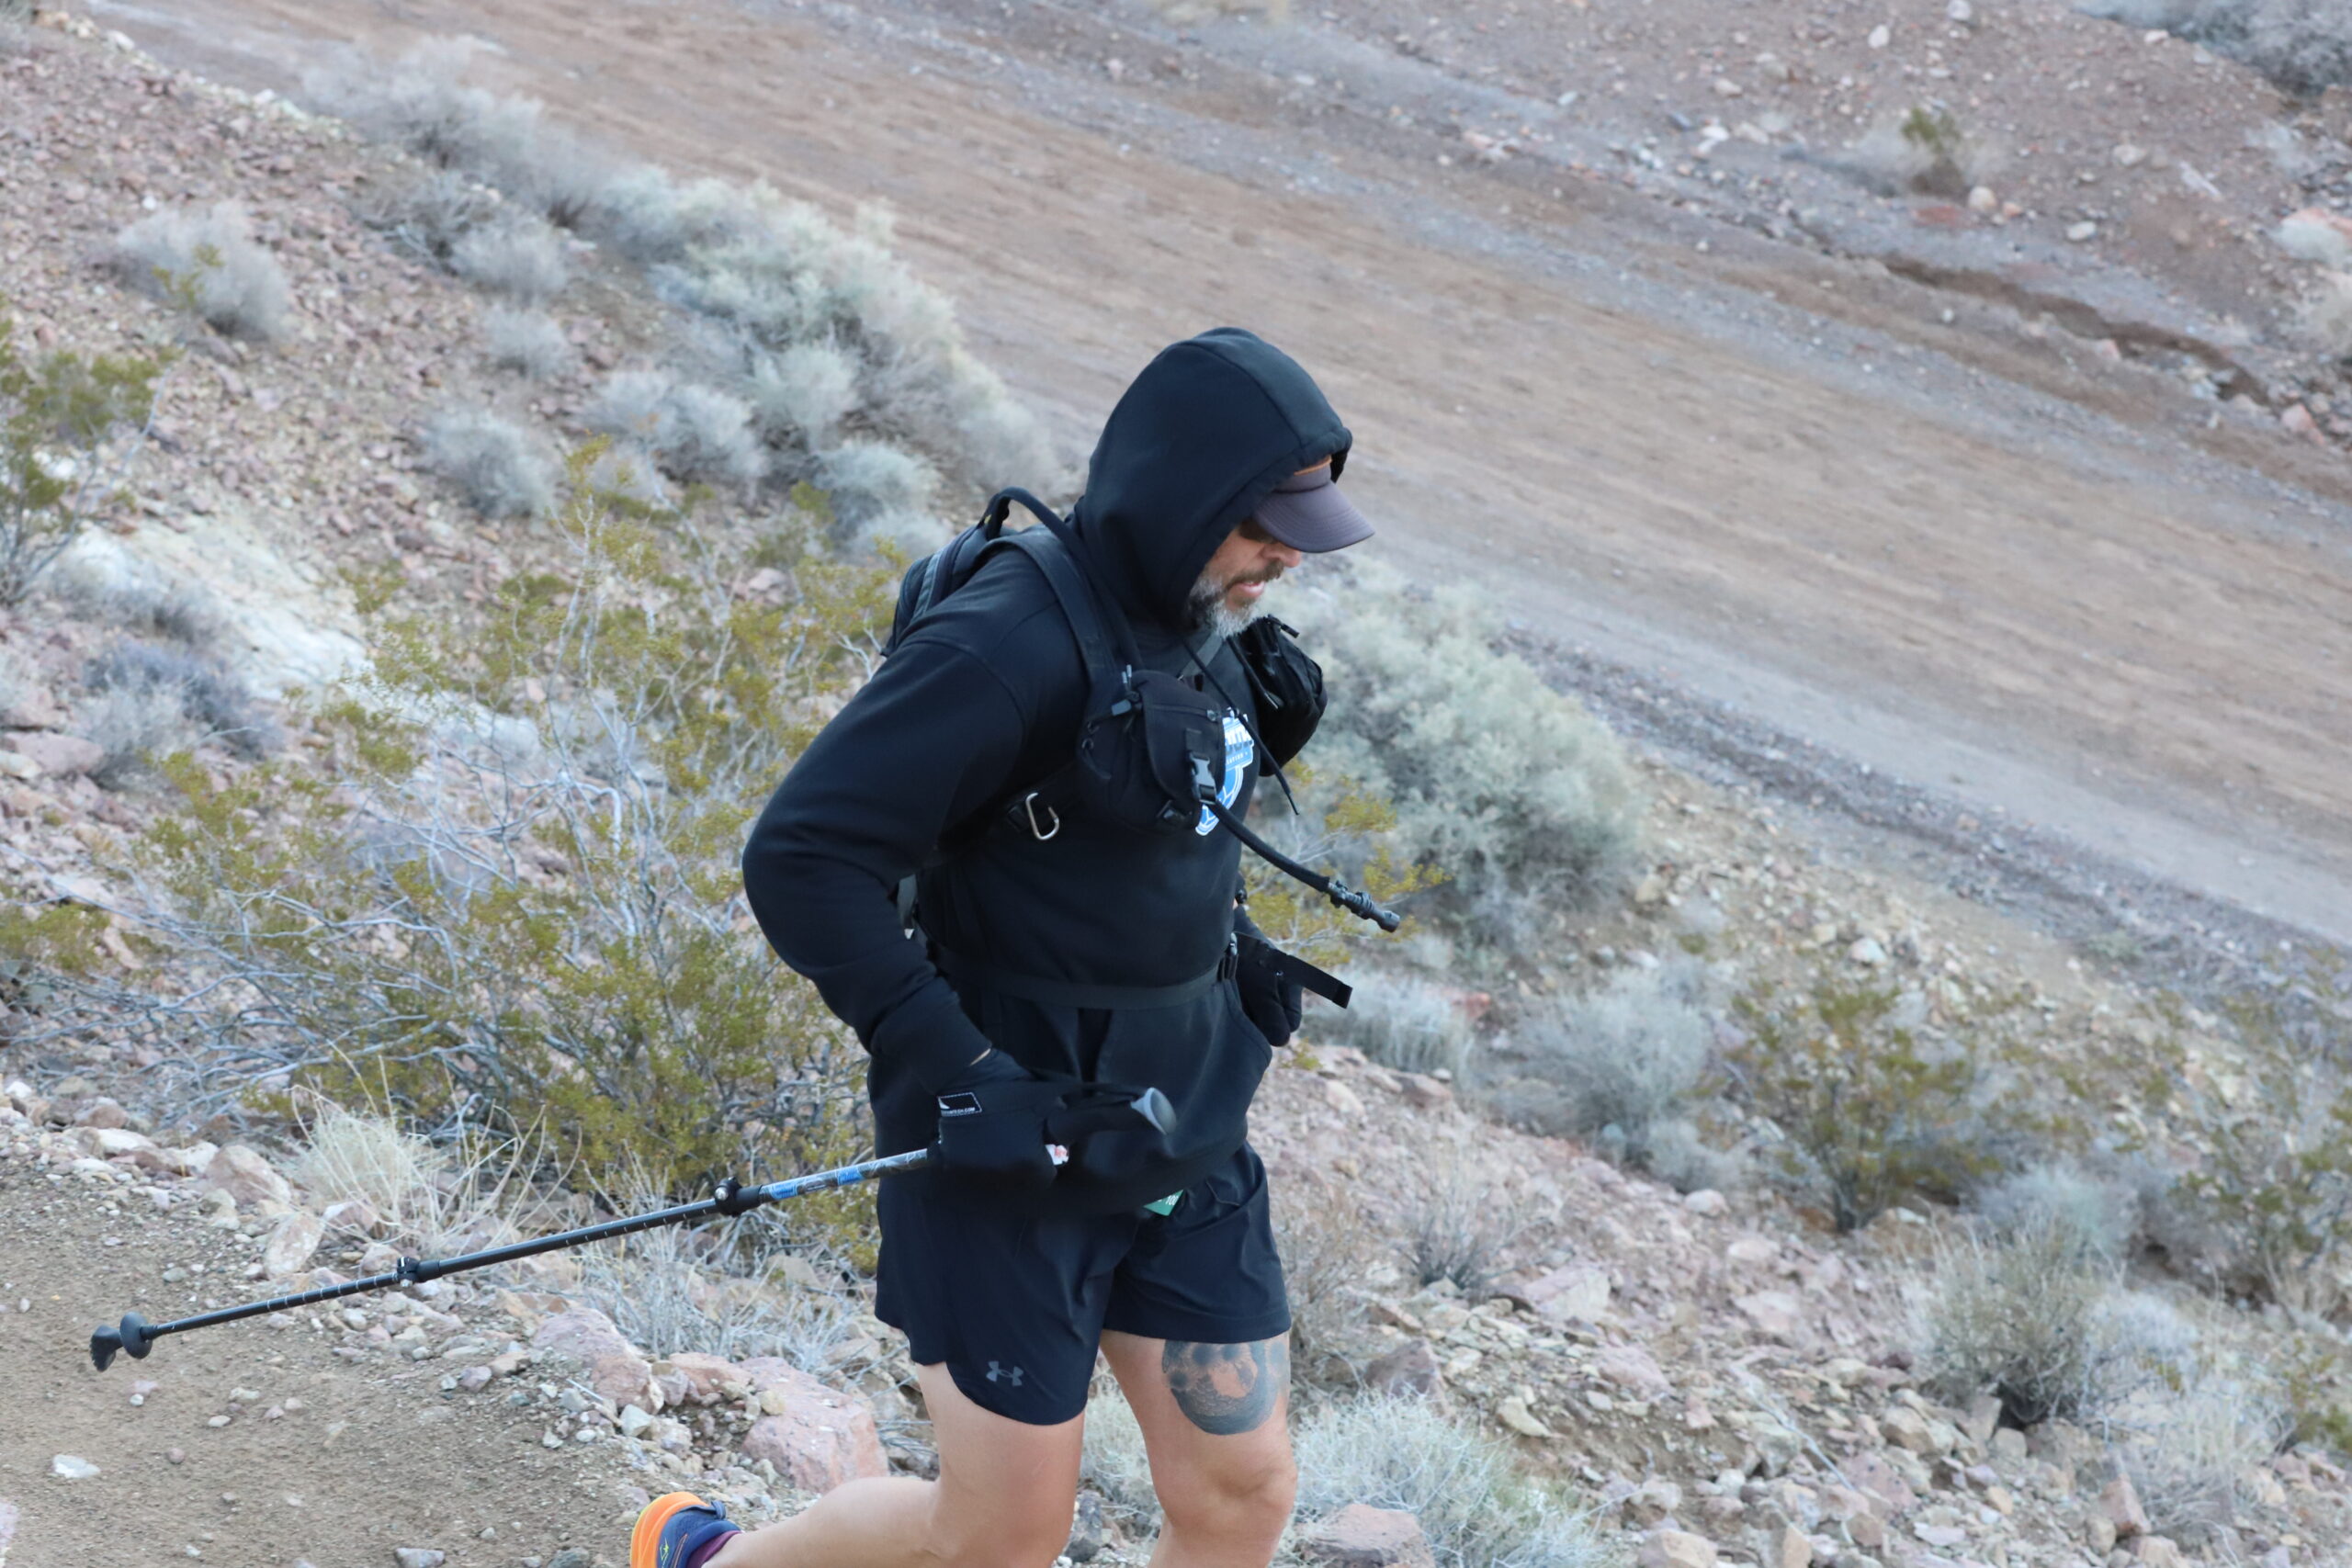 Trail runner running the bootleg boogie in the Mojave desert, Nevada.